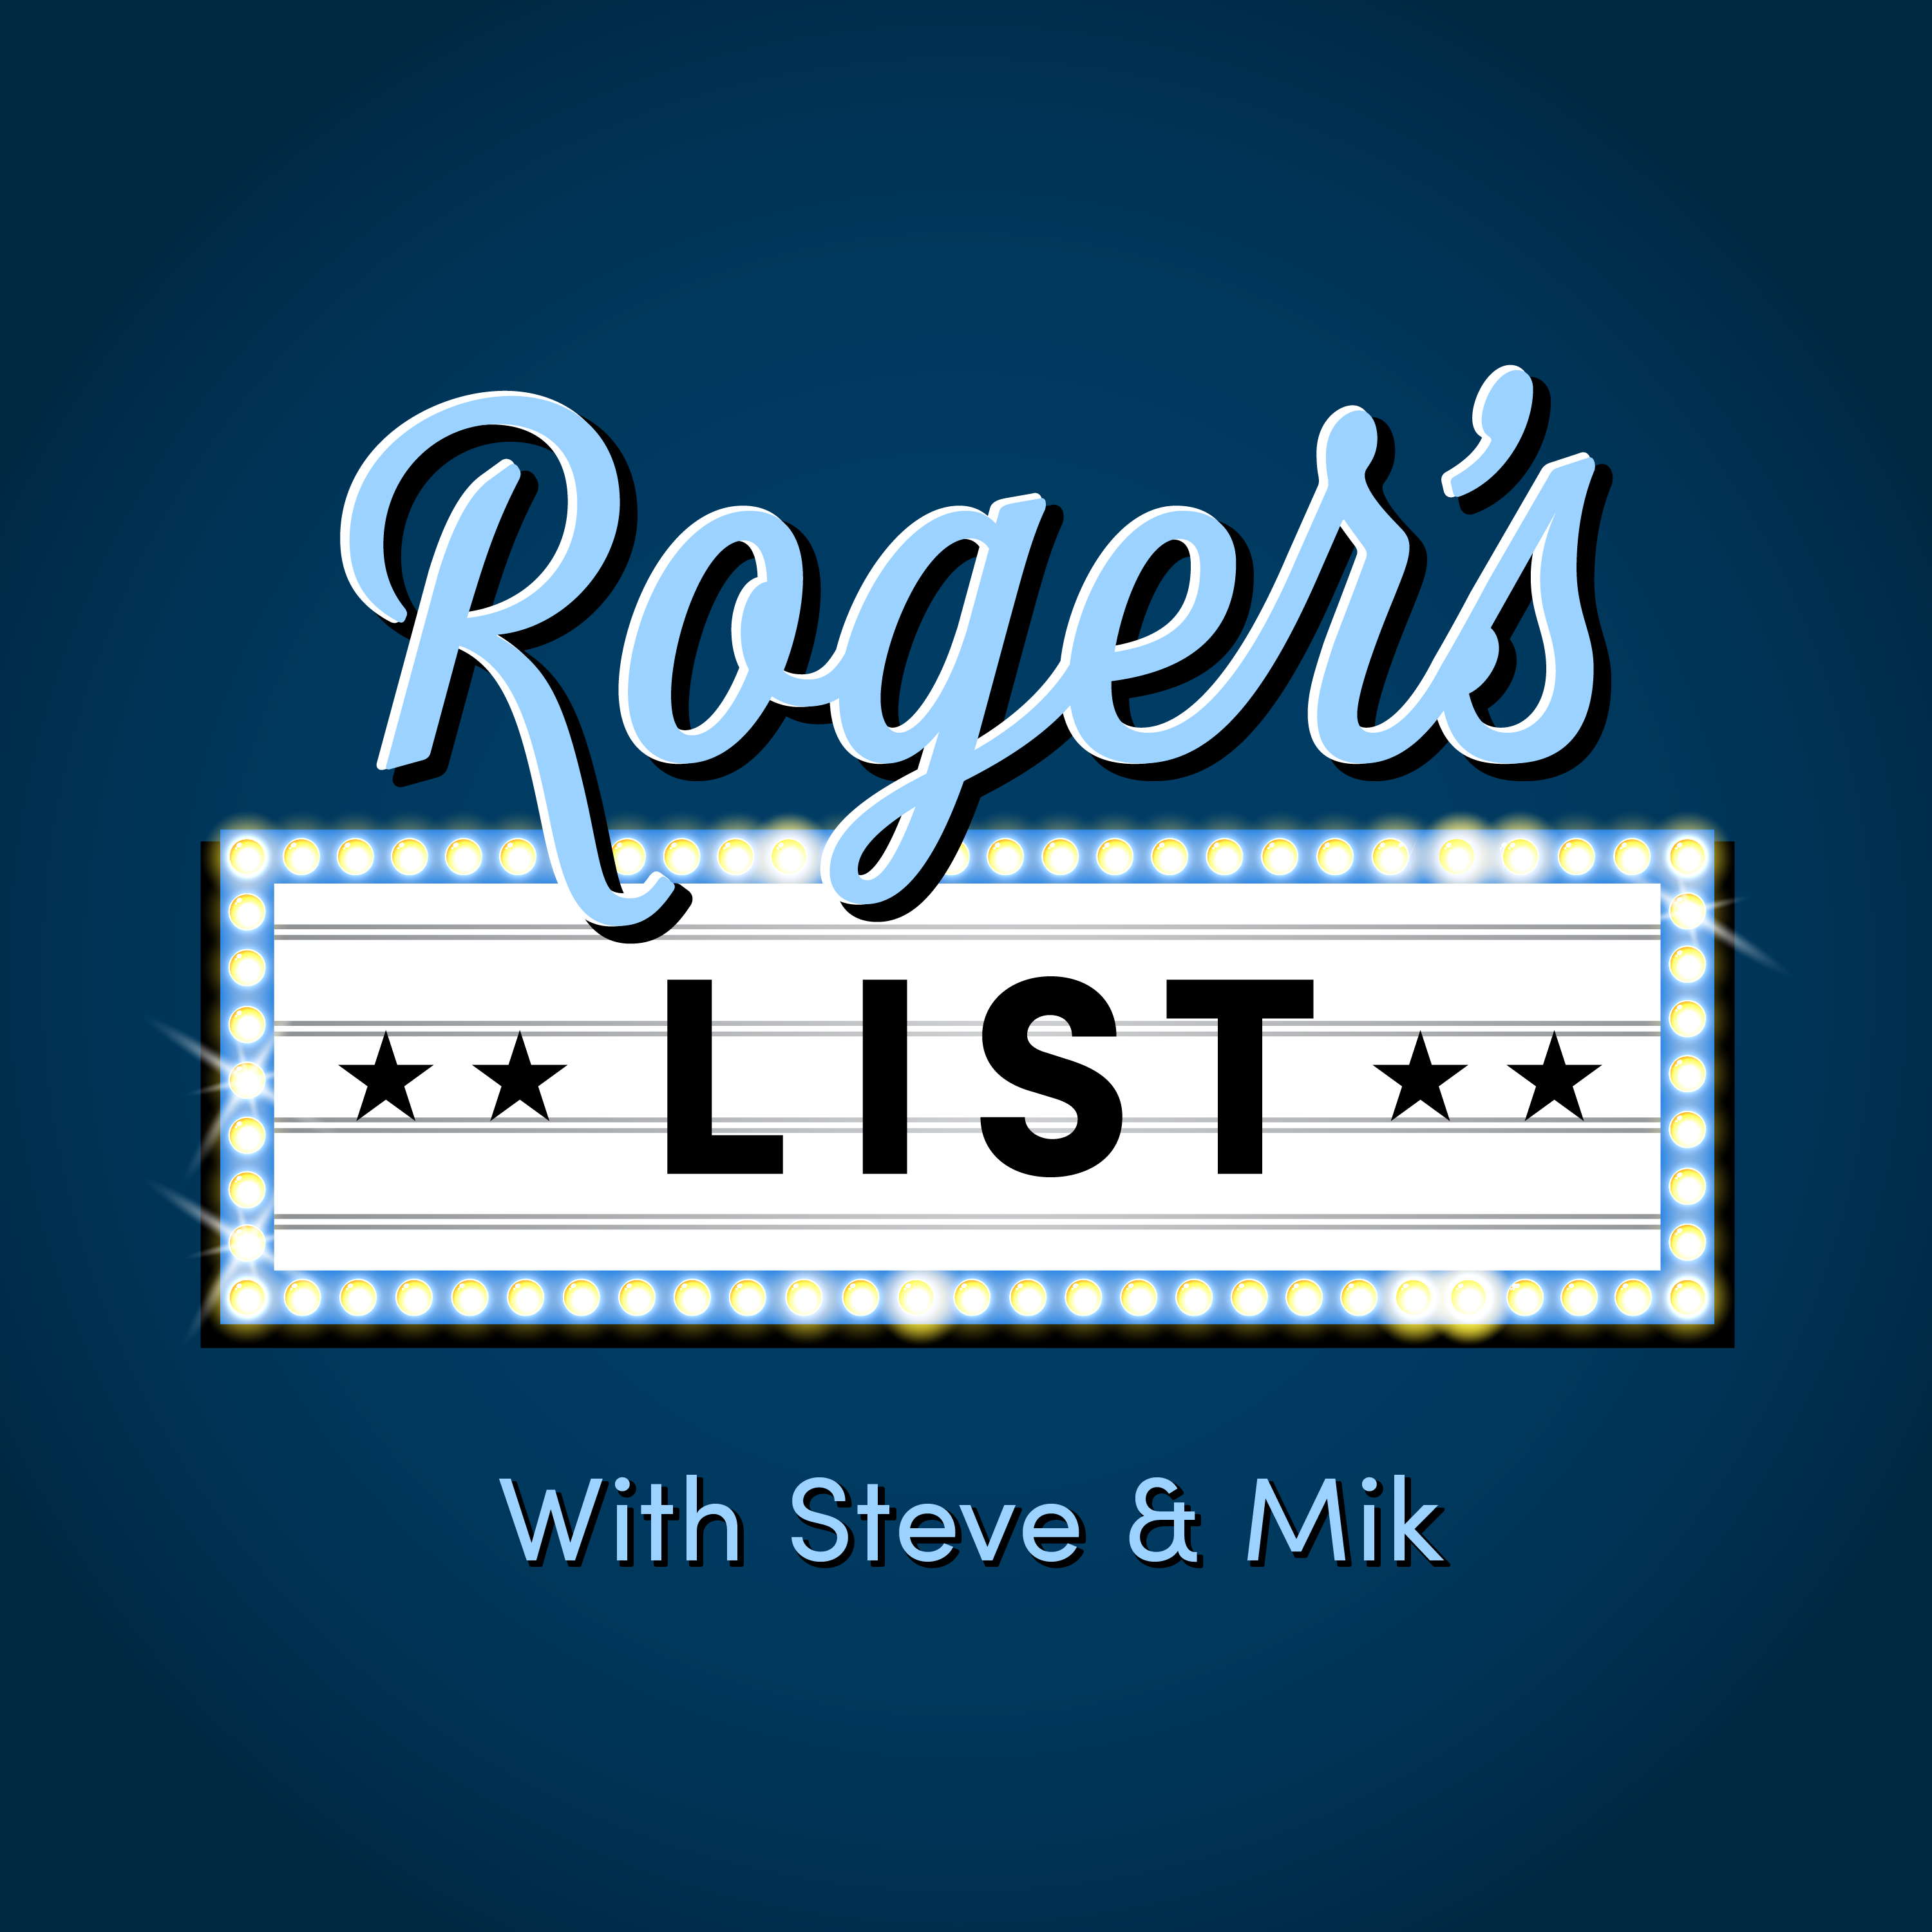 Roger's List